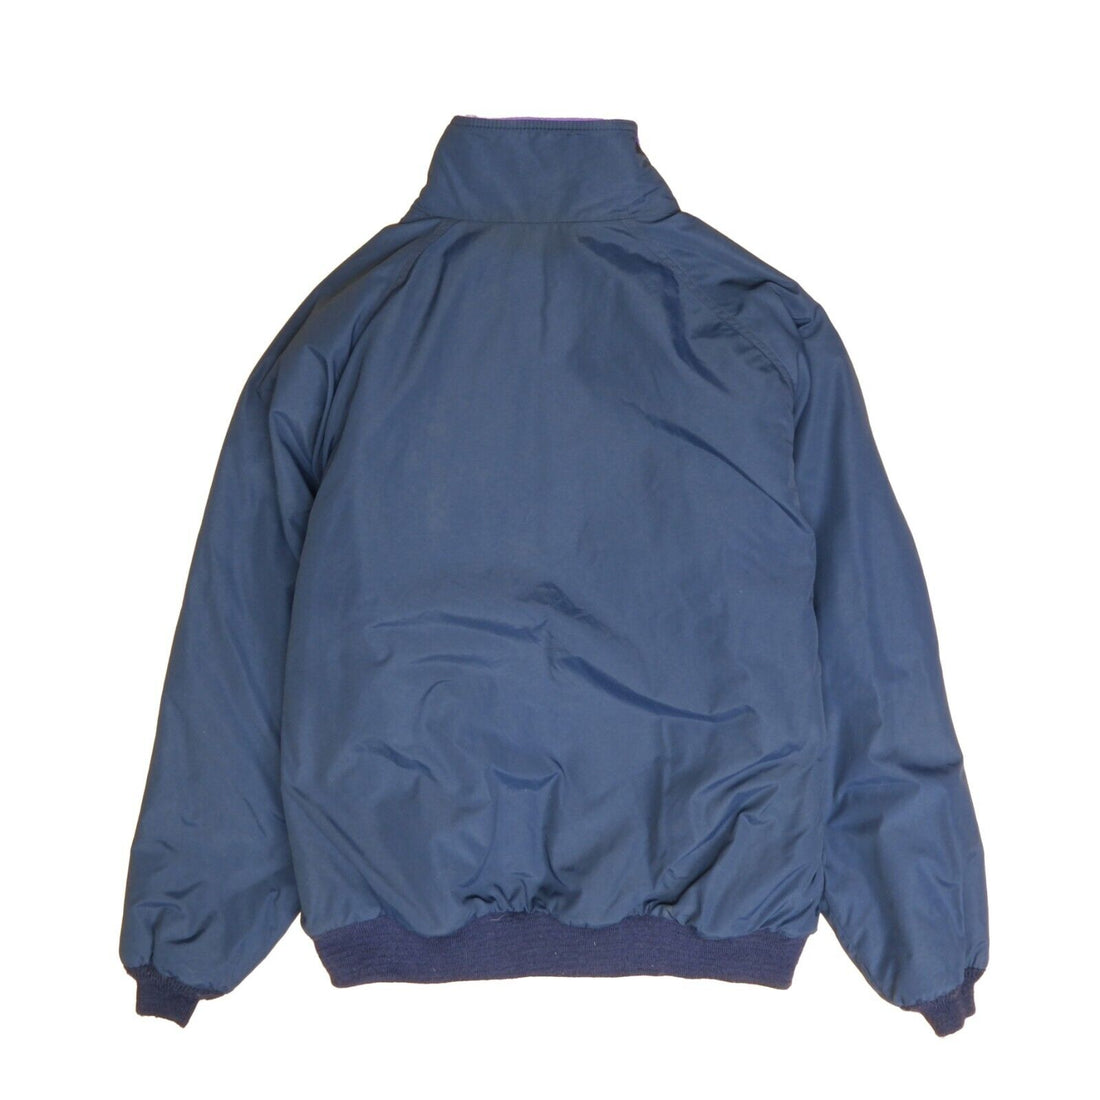 Vintage LL Bean Bomber Jacket Size Large Blue Fleece Lined